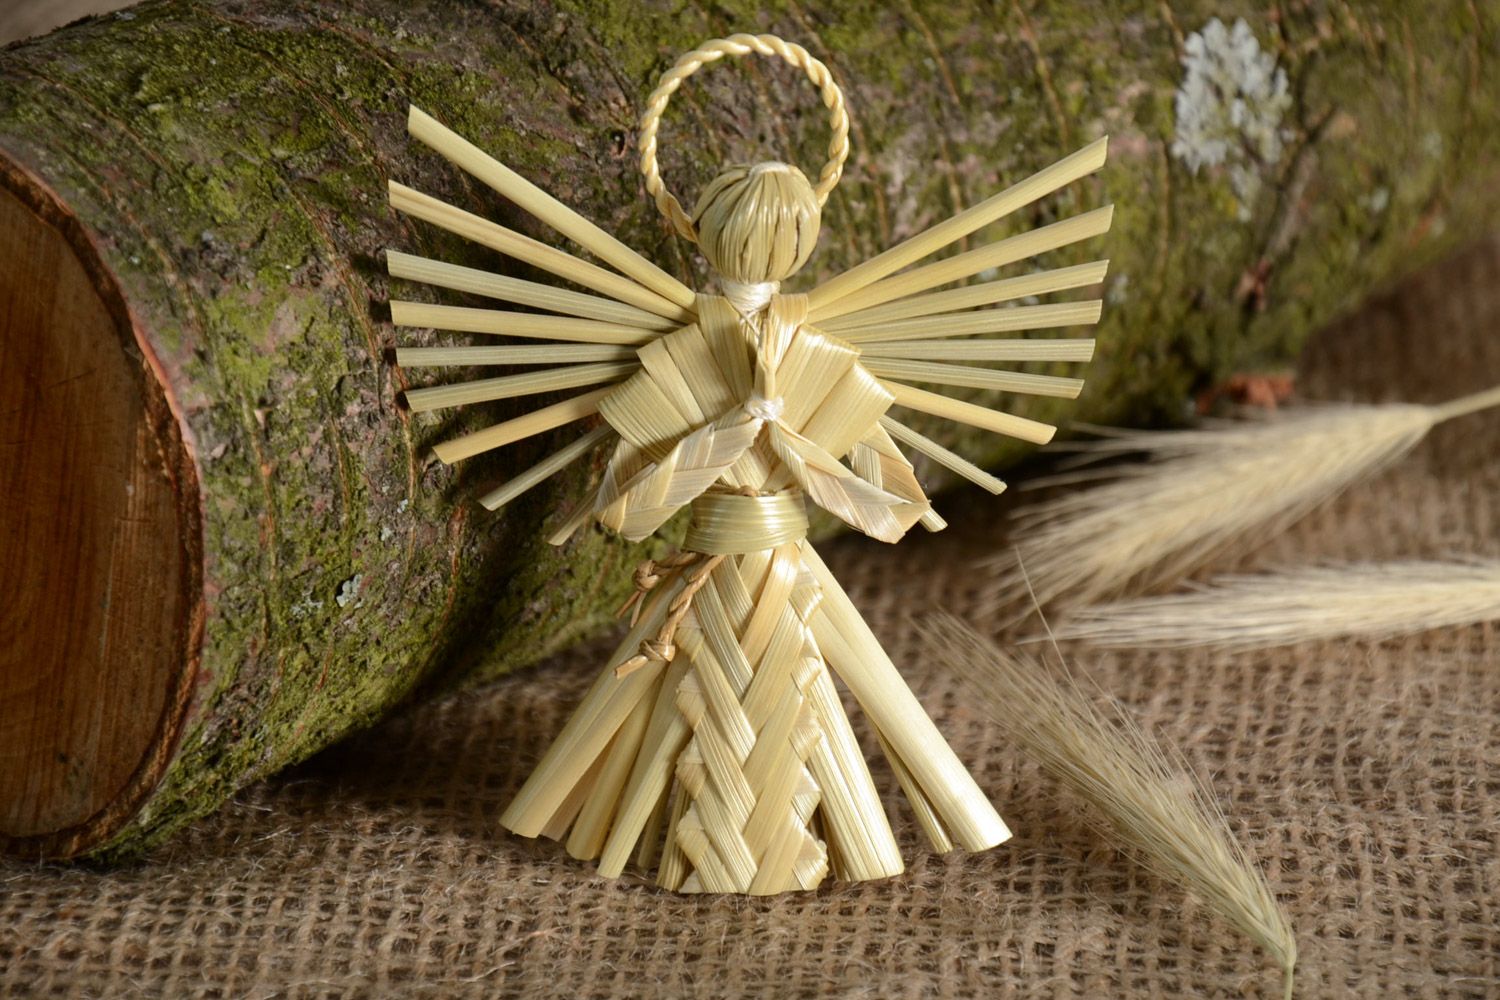 Ангел хранитель из соломы красивый небольшой фигурка для декора ручной работы фото 1